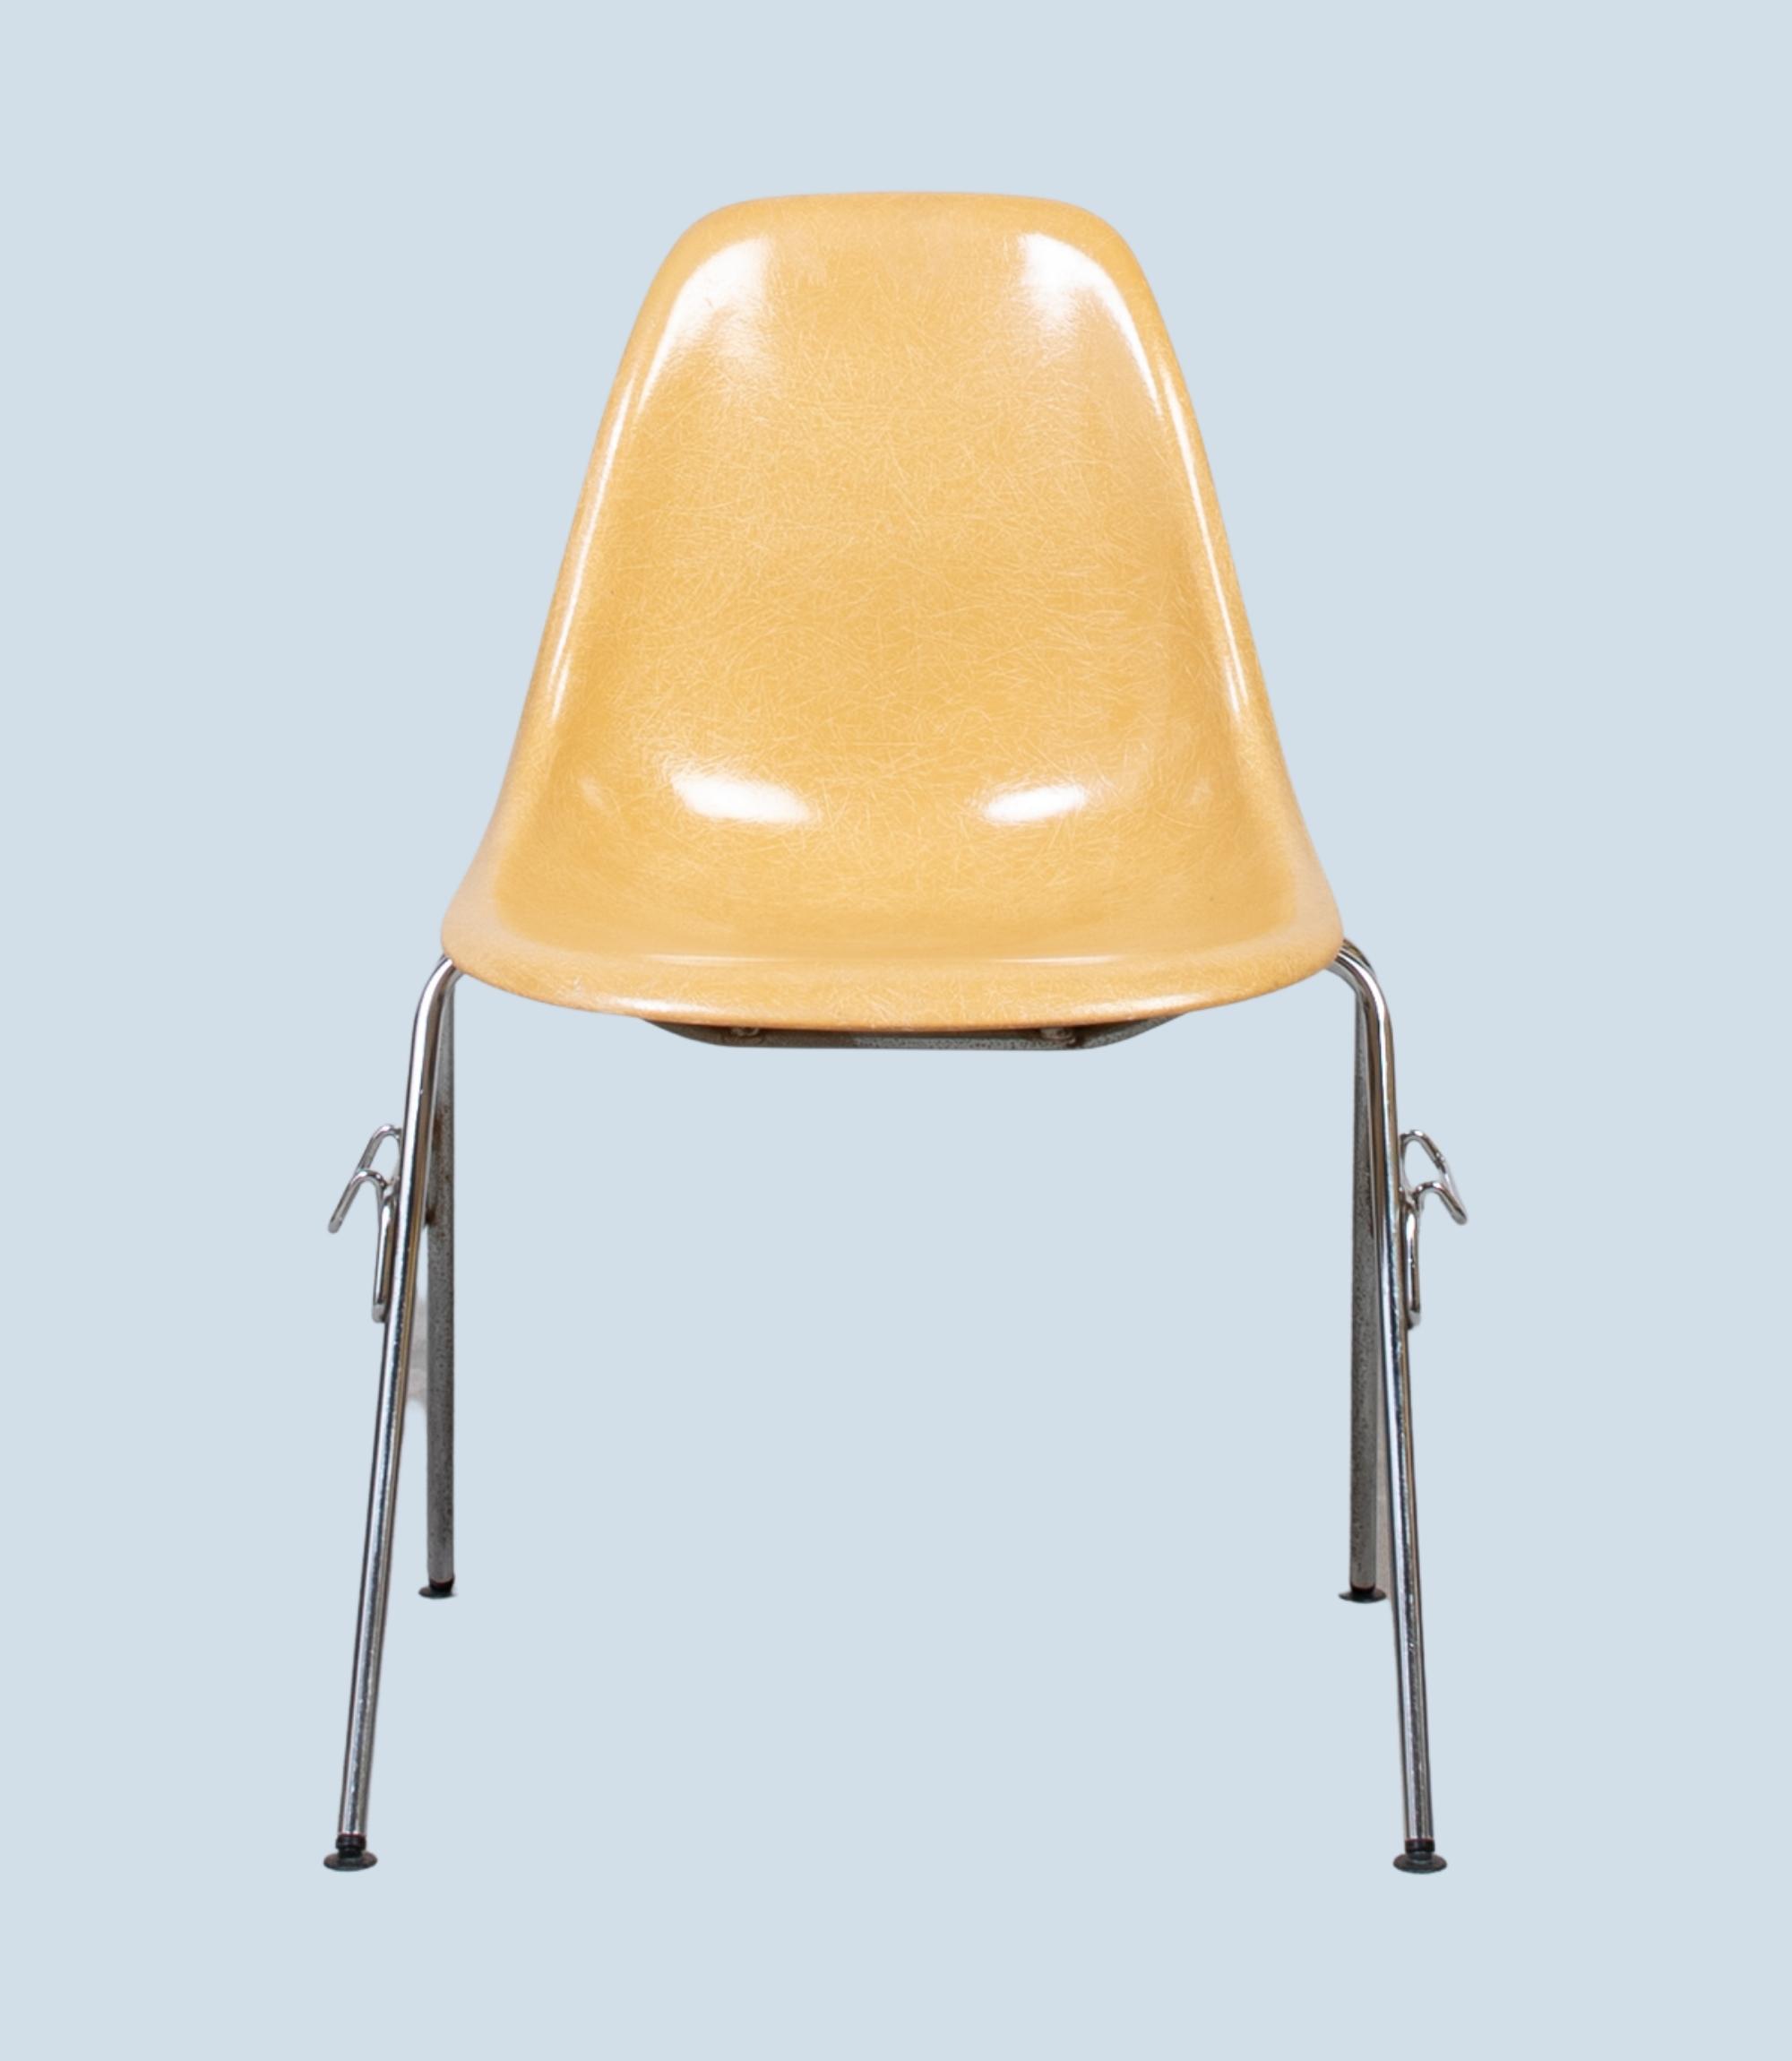 Eames Fiberglass Side Chair by Herman Miller Ochre Light